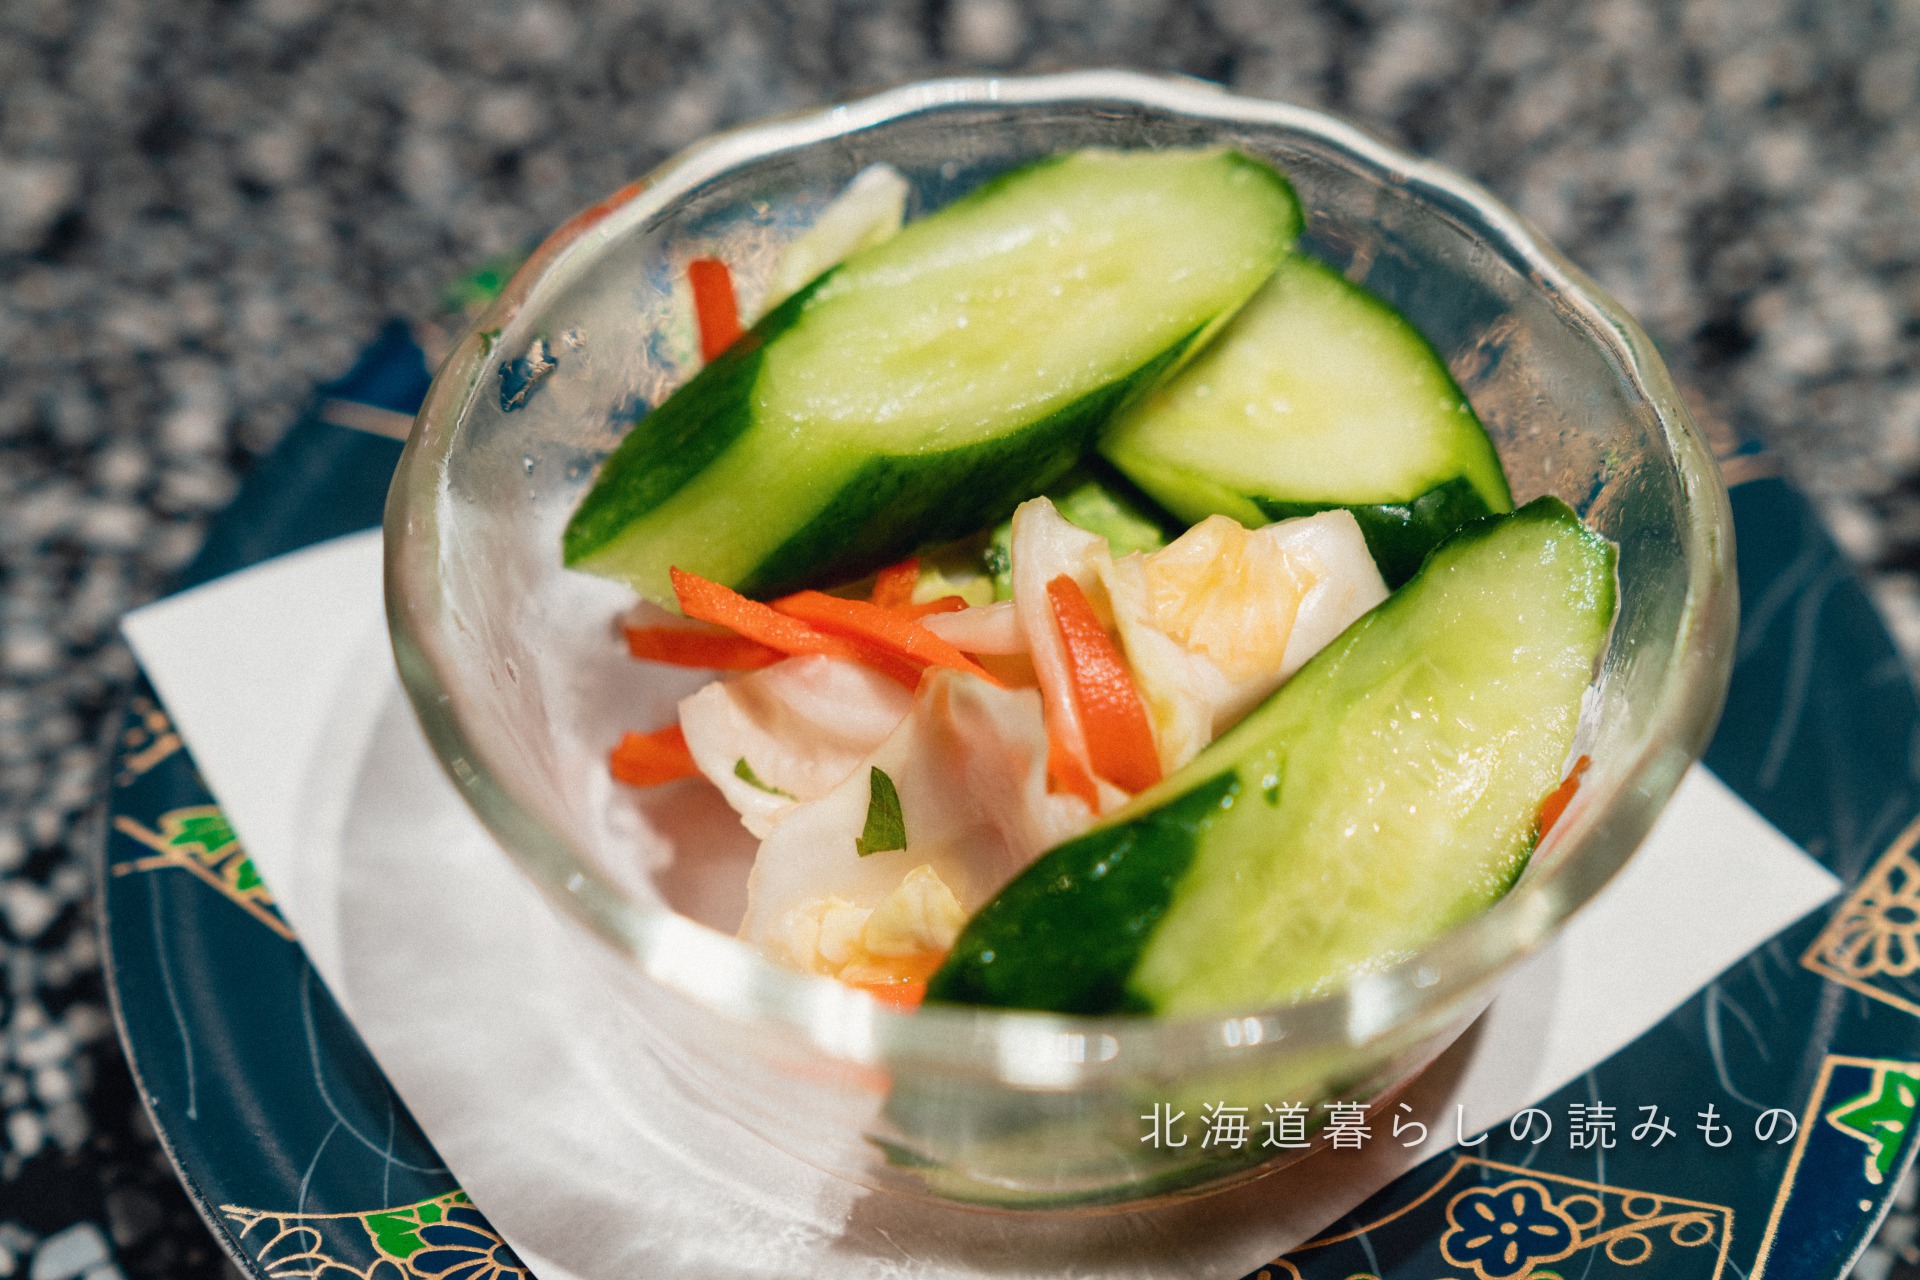 迴轉壽司根室花丸的菜單上的「咸菜」